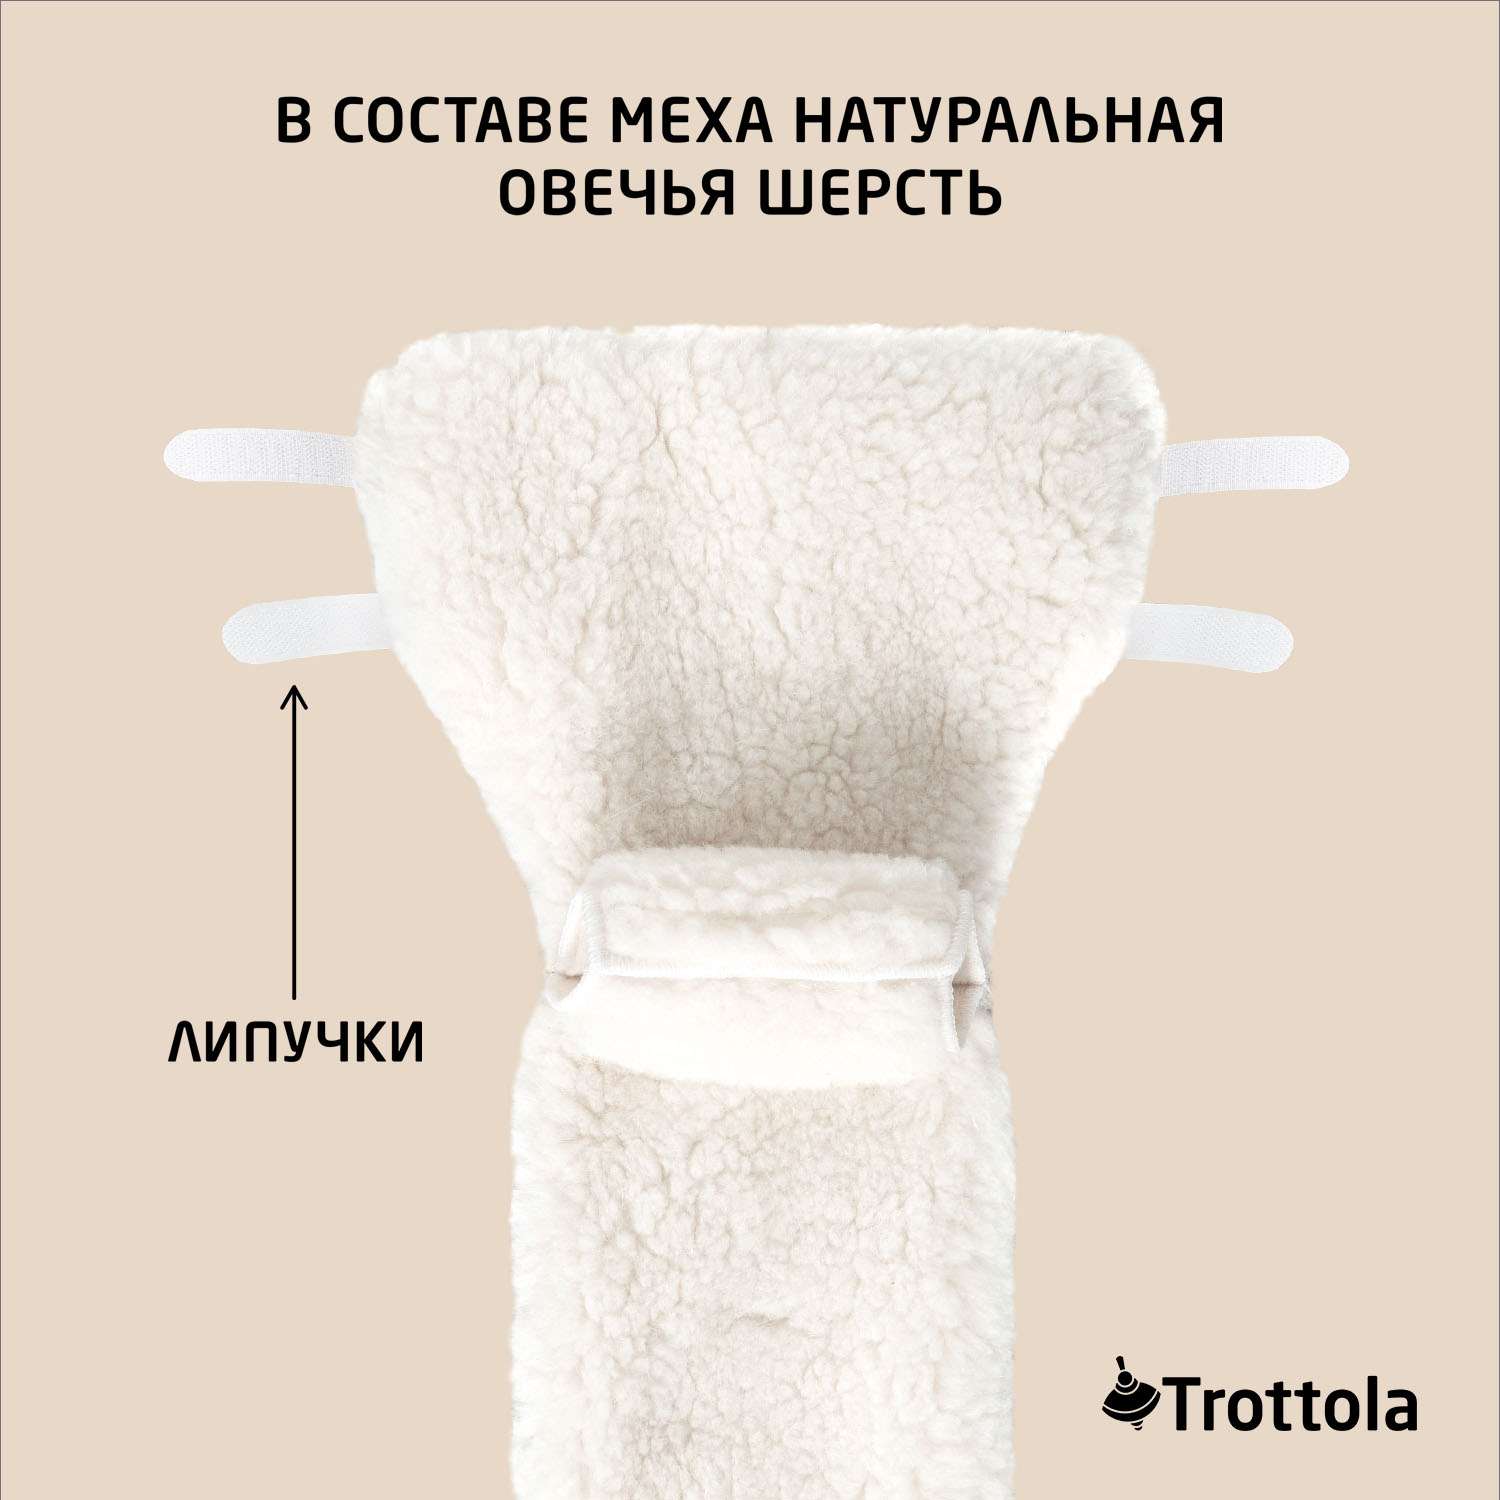 Муфты- варежки для рук Trottola бирюзовые на коляску Т055/бирюзовый - фото 4